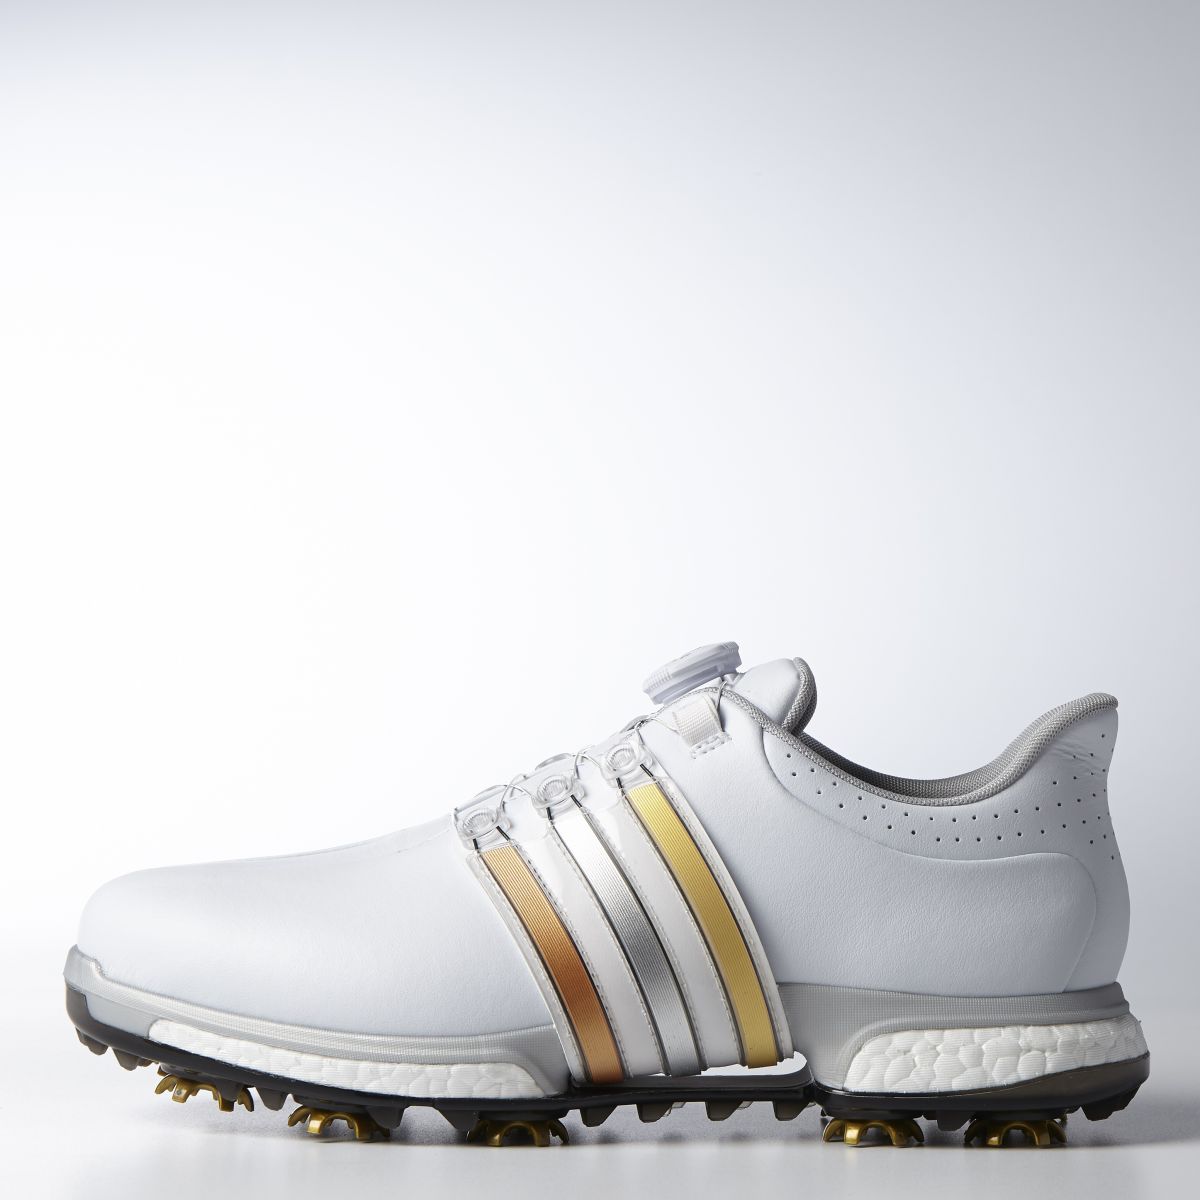 指標性鞋款Tour360 Boa boost結合運動盛會的元素，以金、銀、銅三色條紋展現高球運動精神。